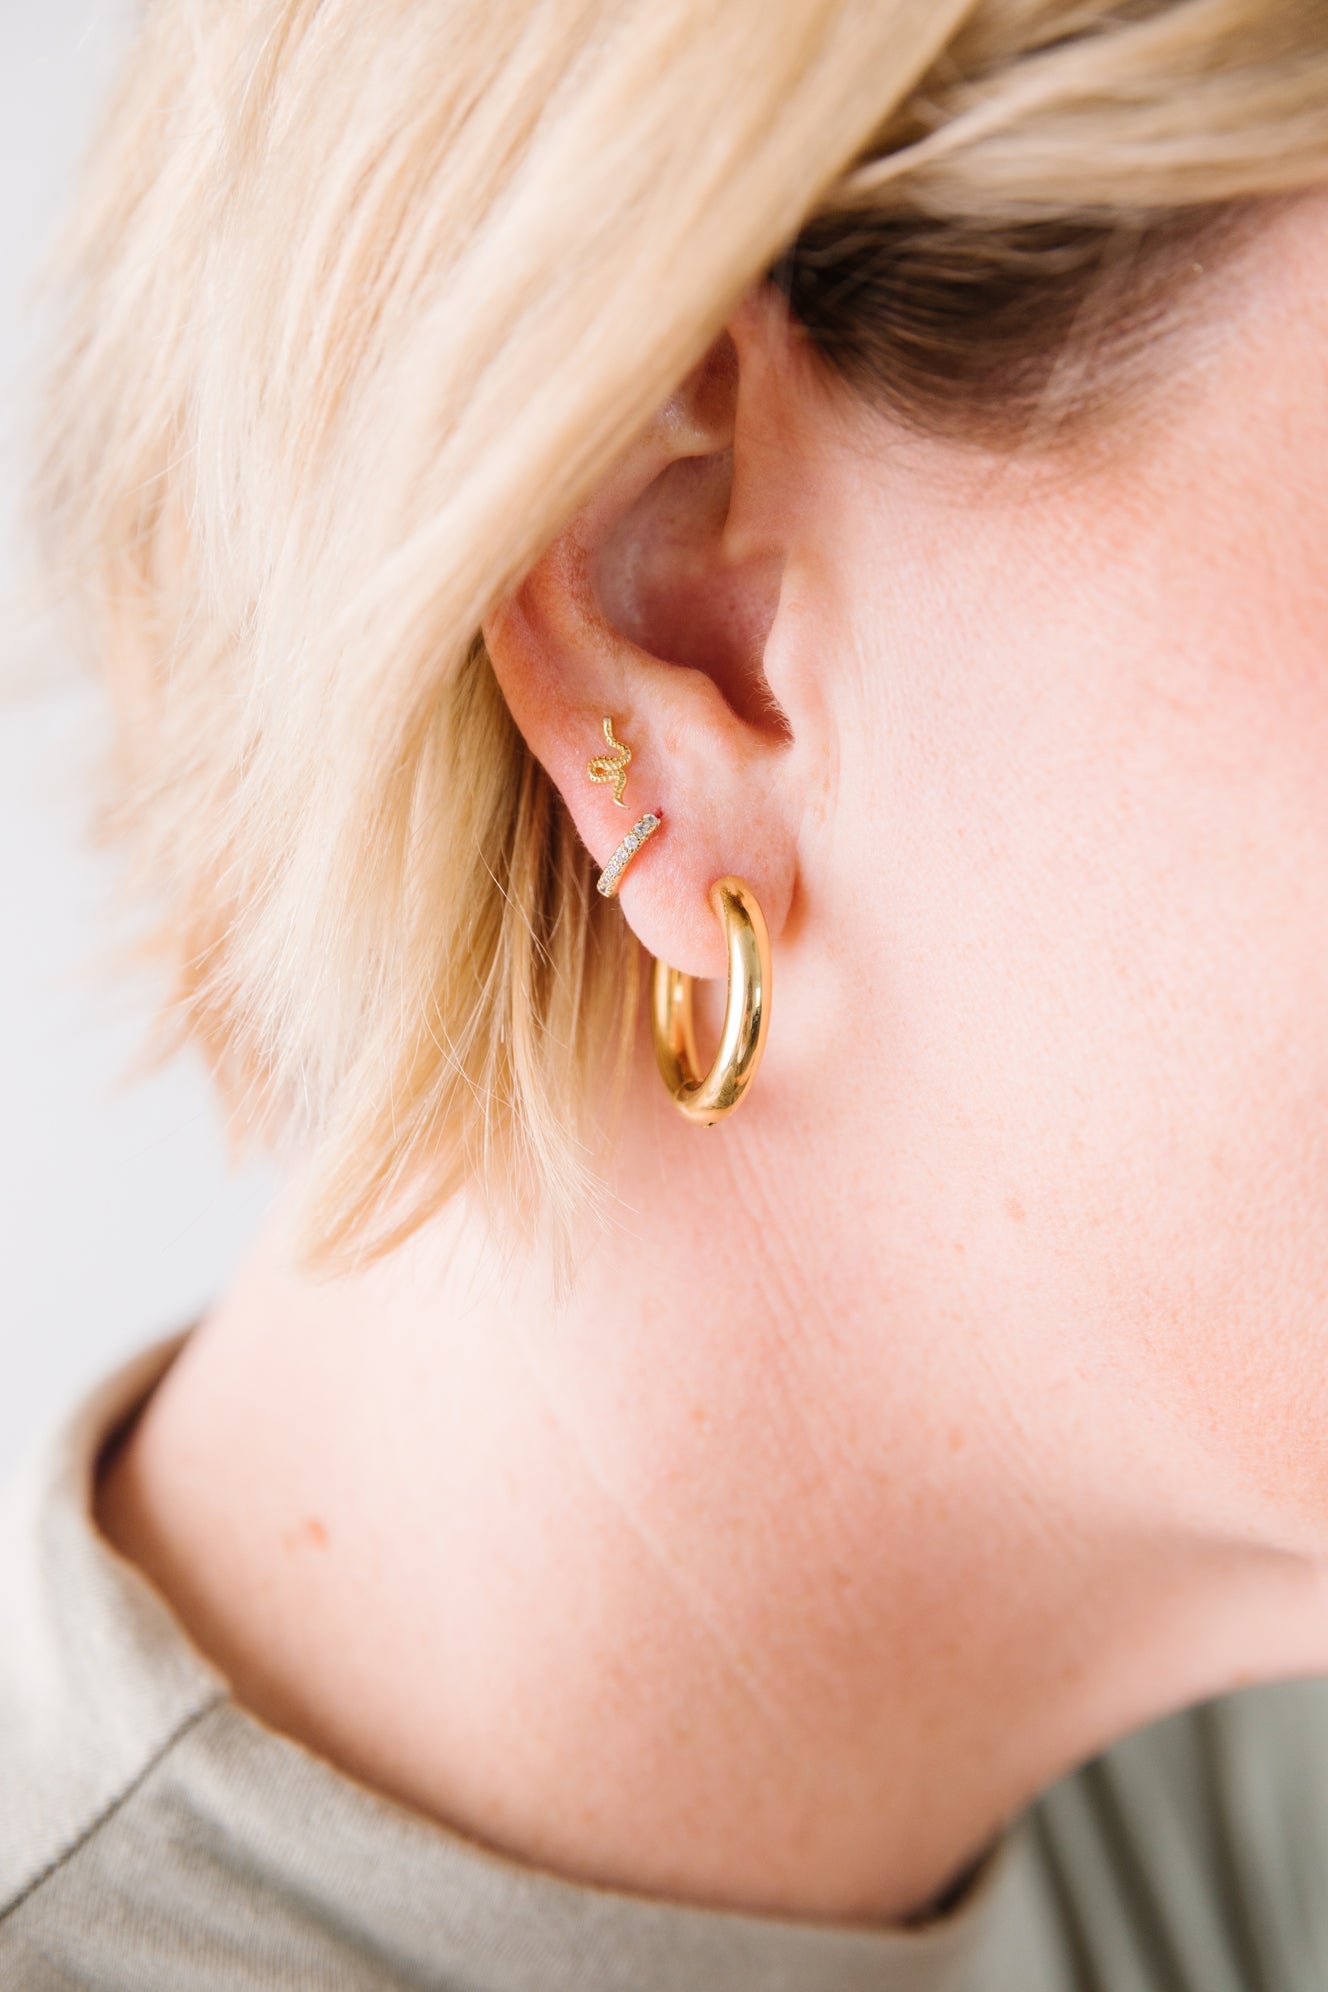 Deia Chunky Medium Hoop Earrings in 18ct Gold Vermeil on Sterling Silver |  Jewellery by Monica Vinader